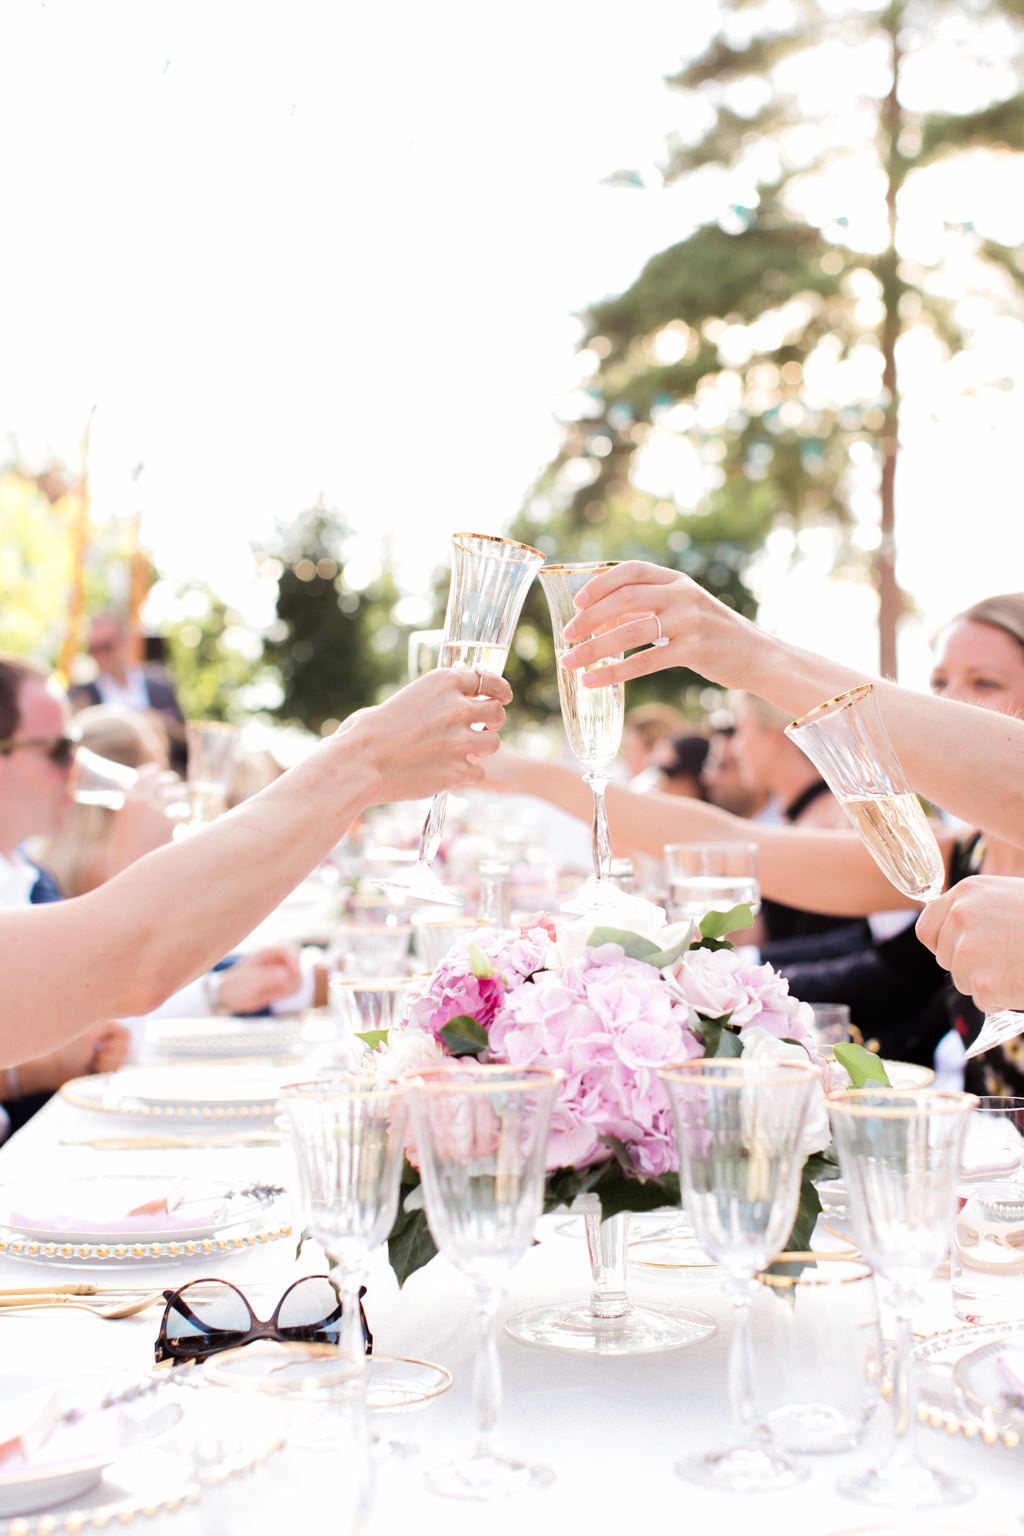 Knigge-Tipps: So benehmen sich Brautpaare und Gäste richtig